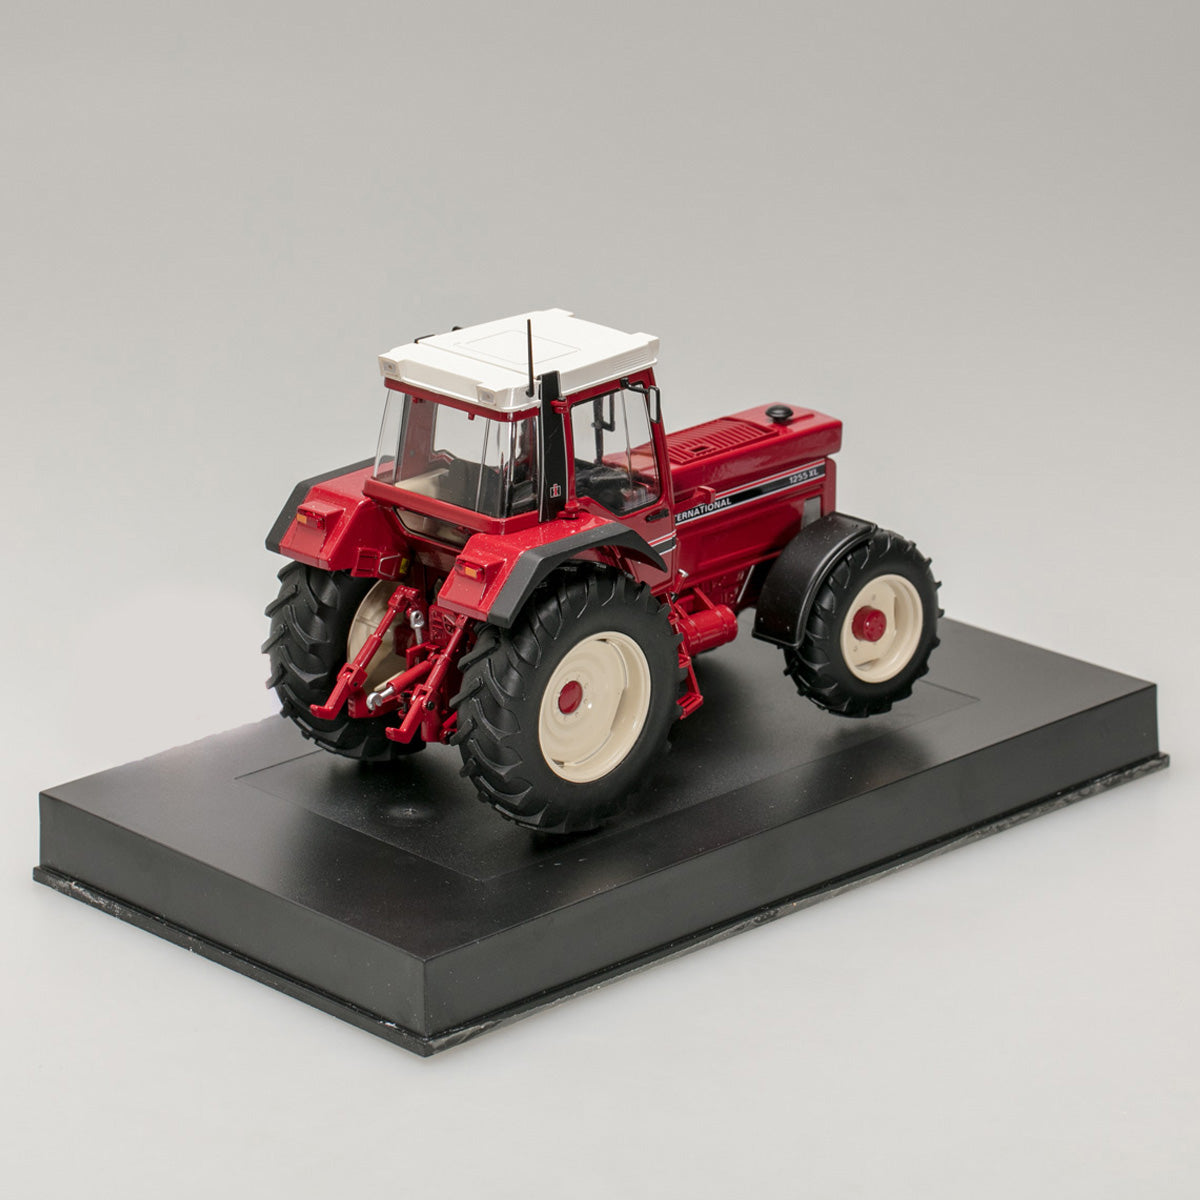 Schuco 1:32 IHC 1255XL Tractor red 450781000